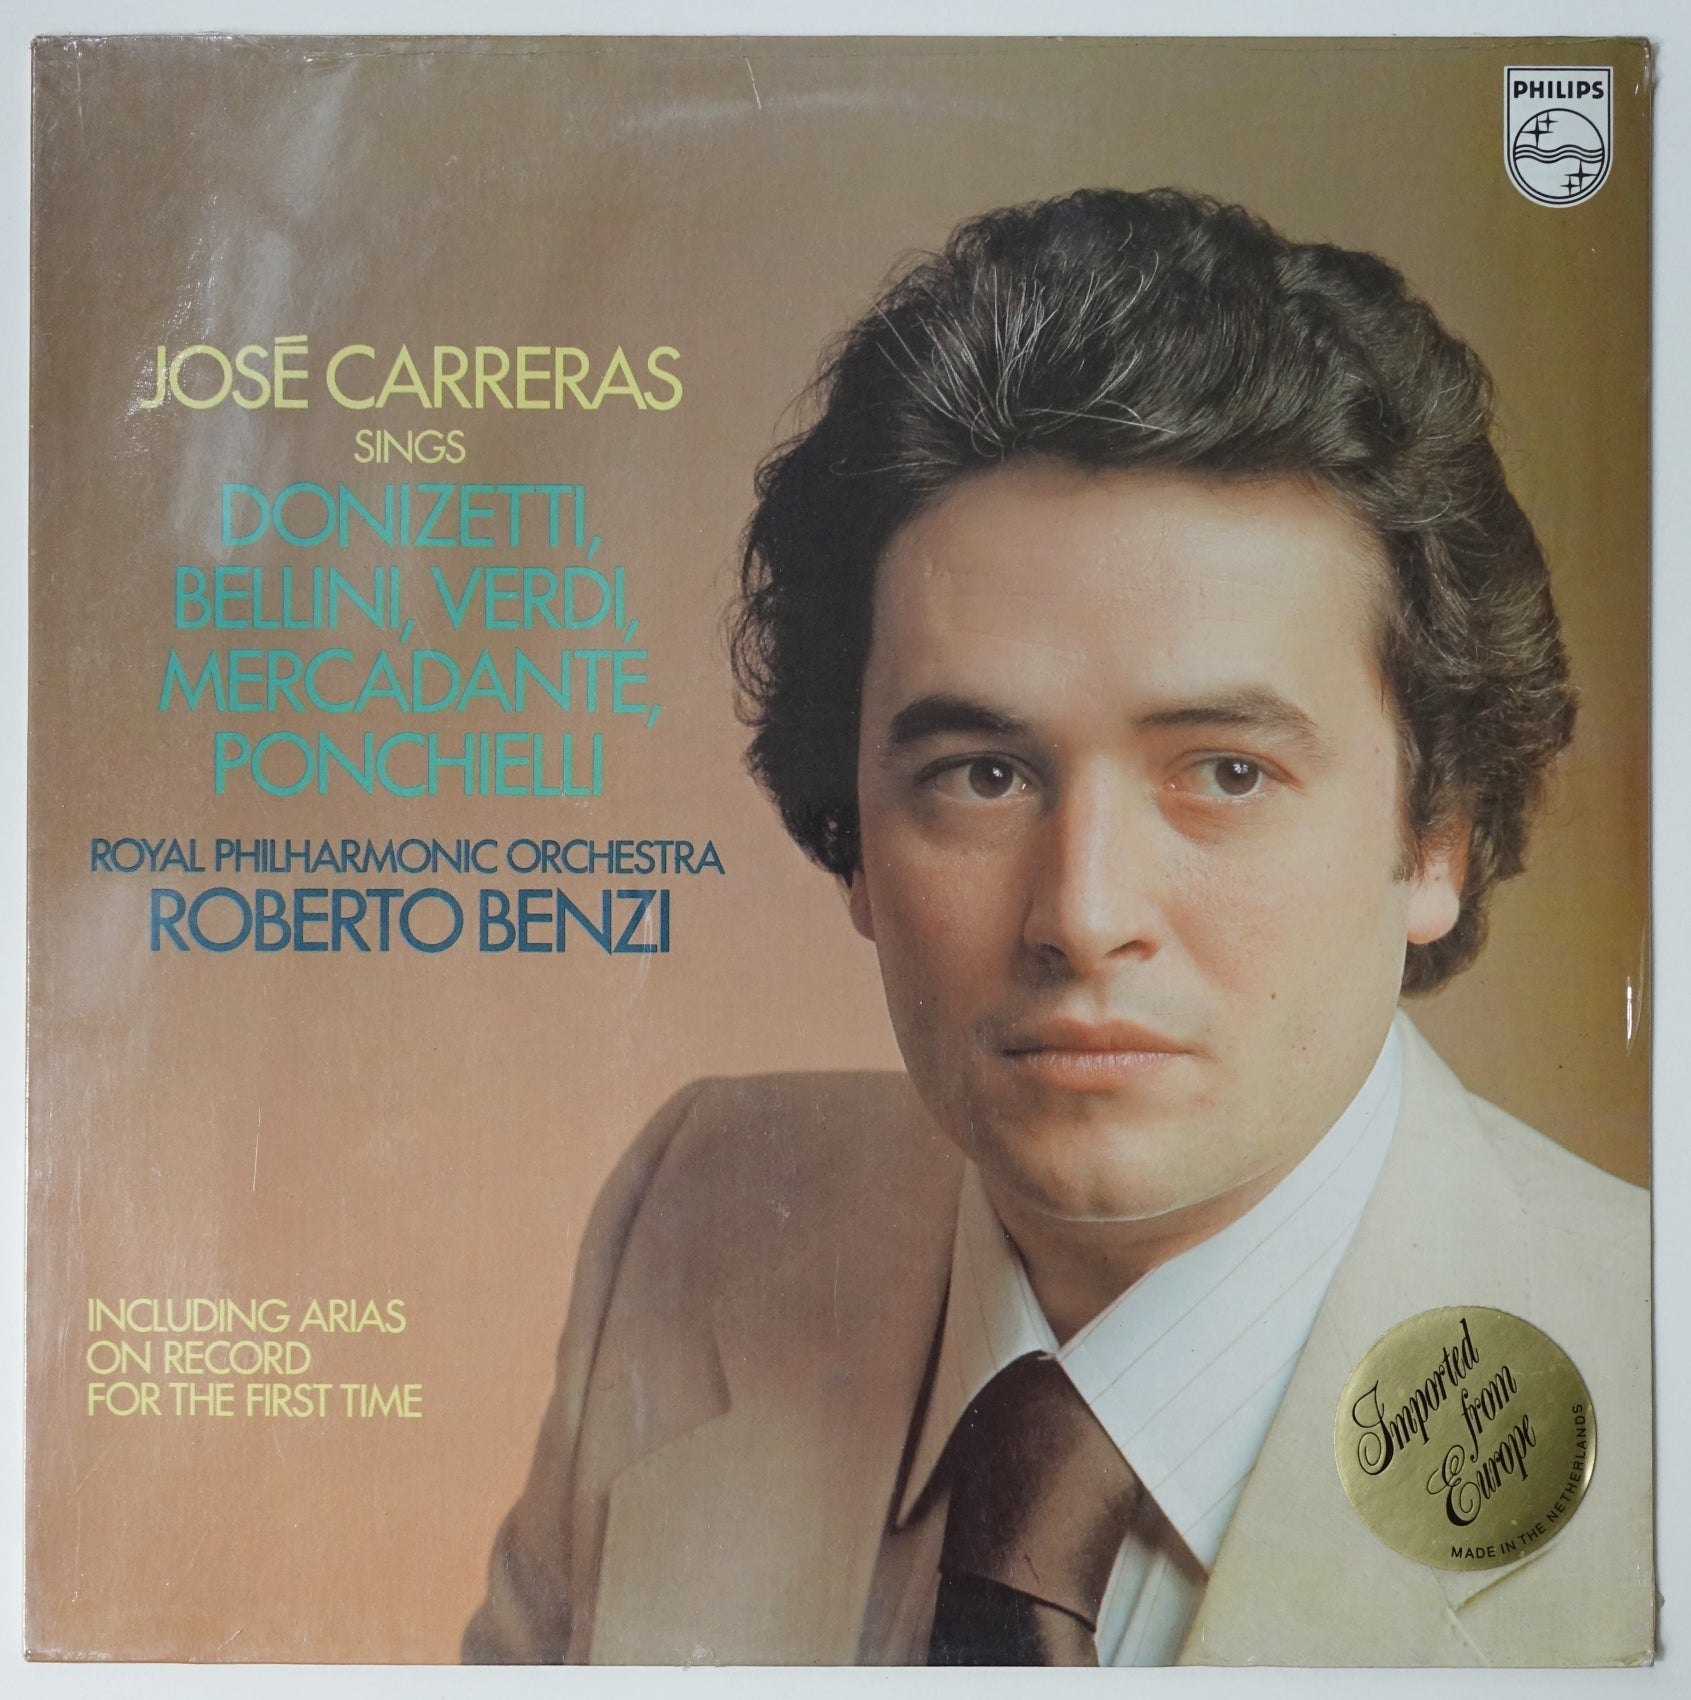 SEALED PHI005: Jose Carreras Sings Donizetti, Bellini, Verdi, Mercadante, Ponchielli